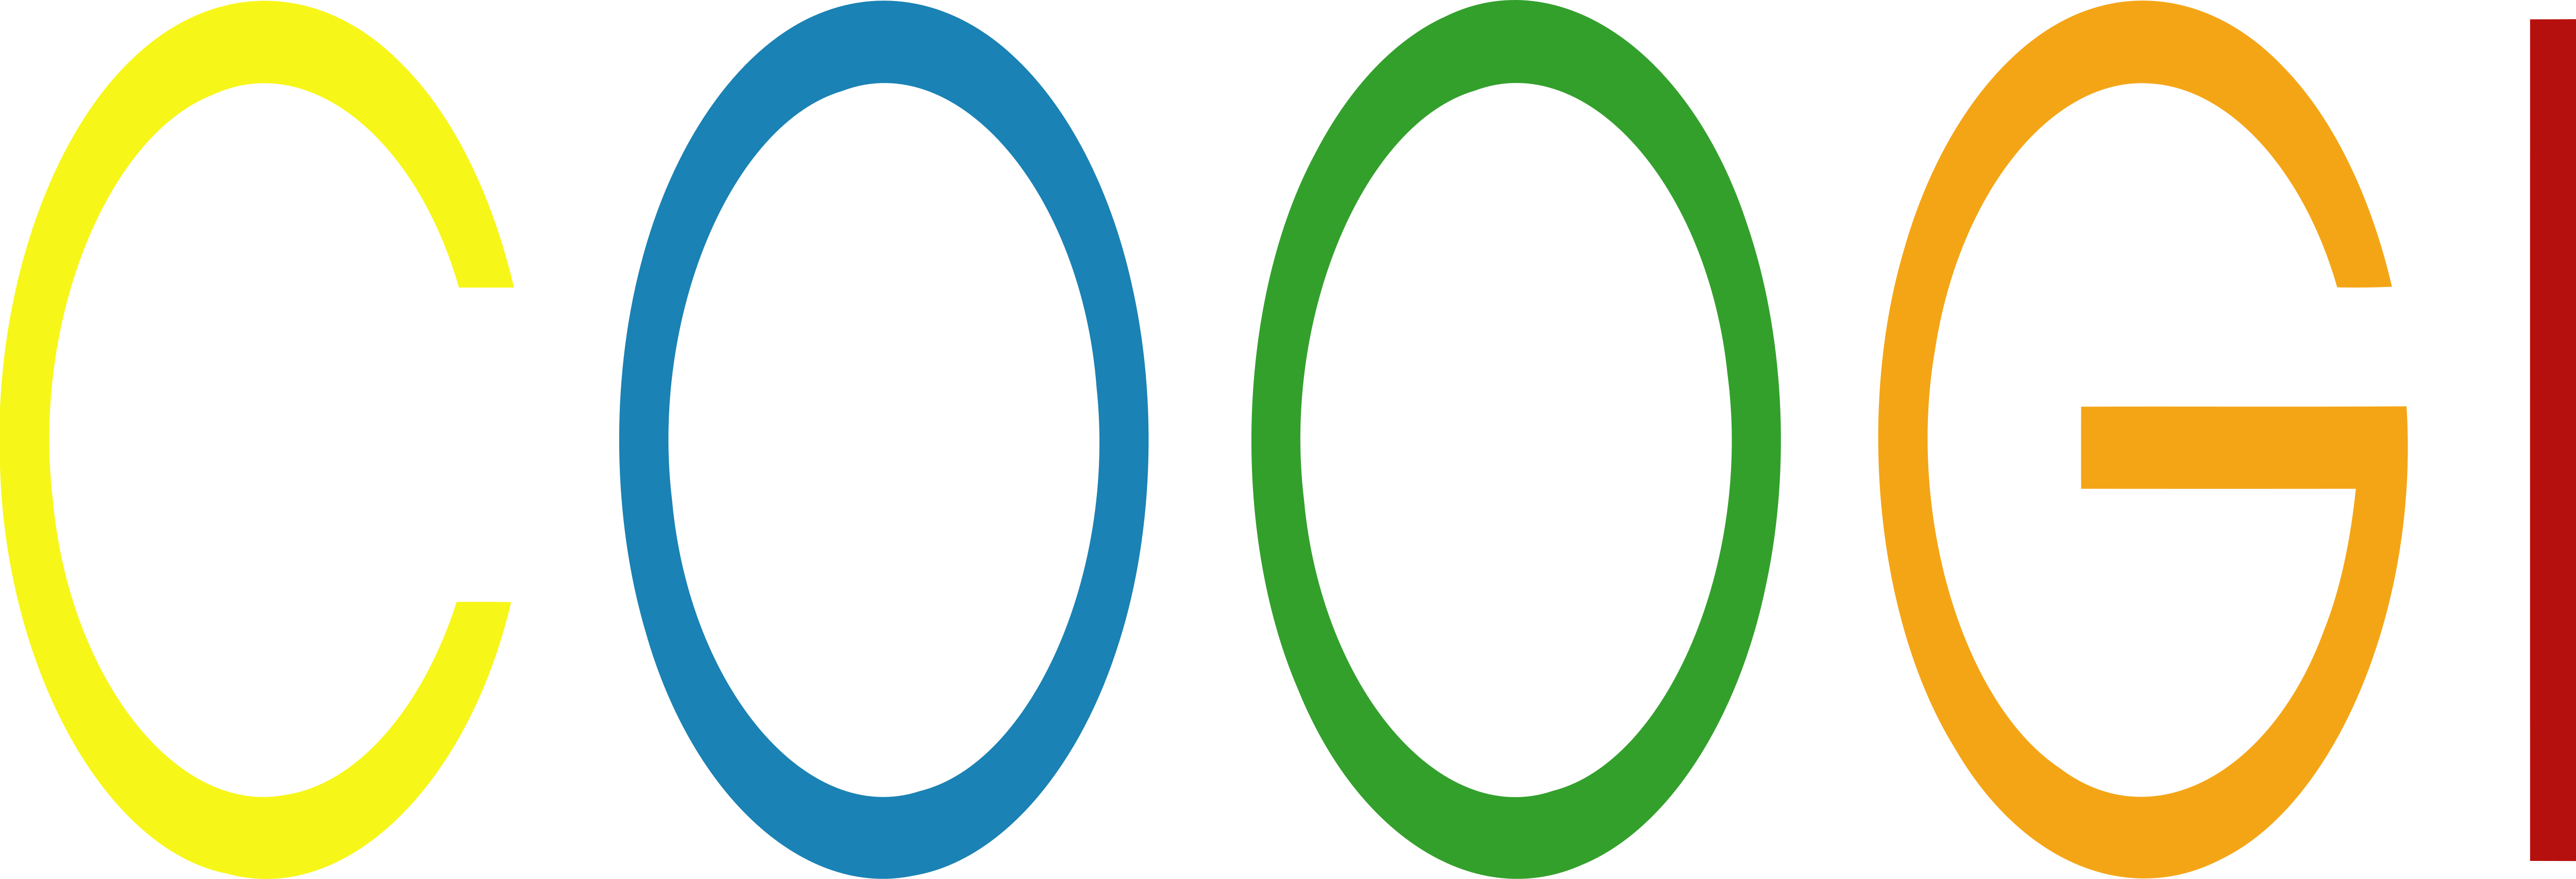 coogi logo vector